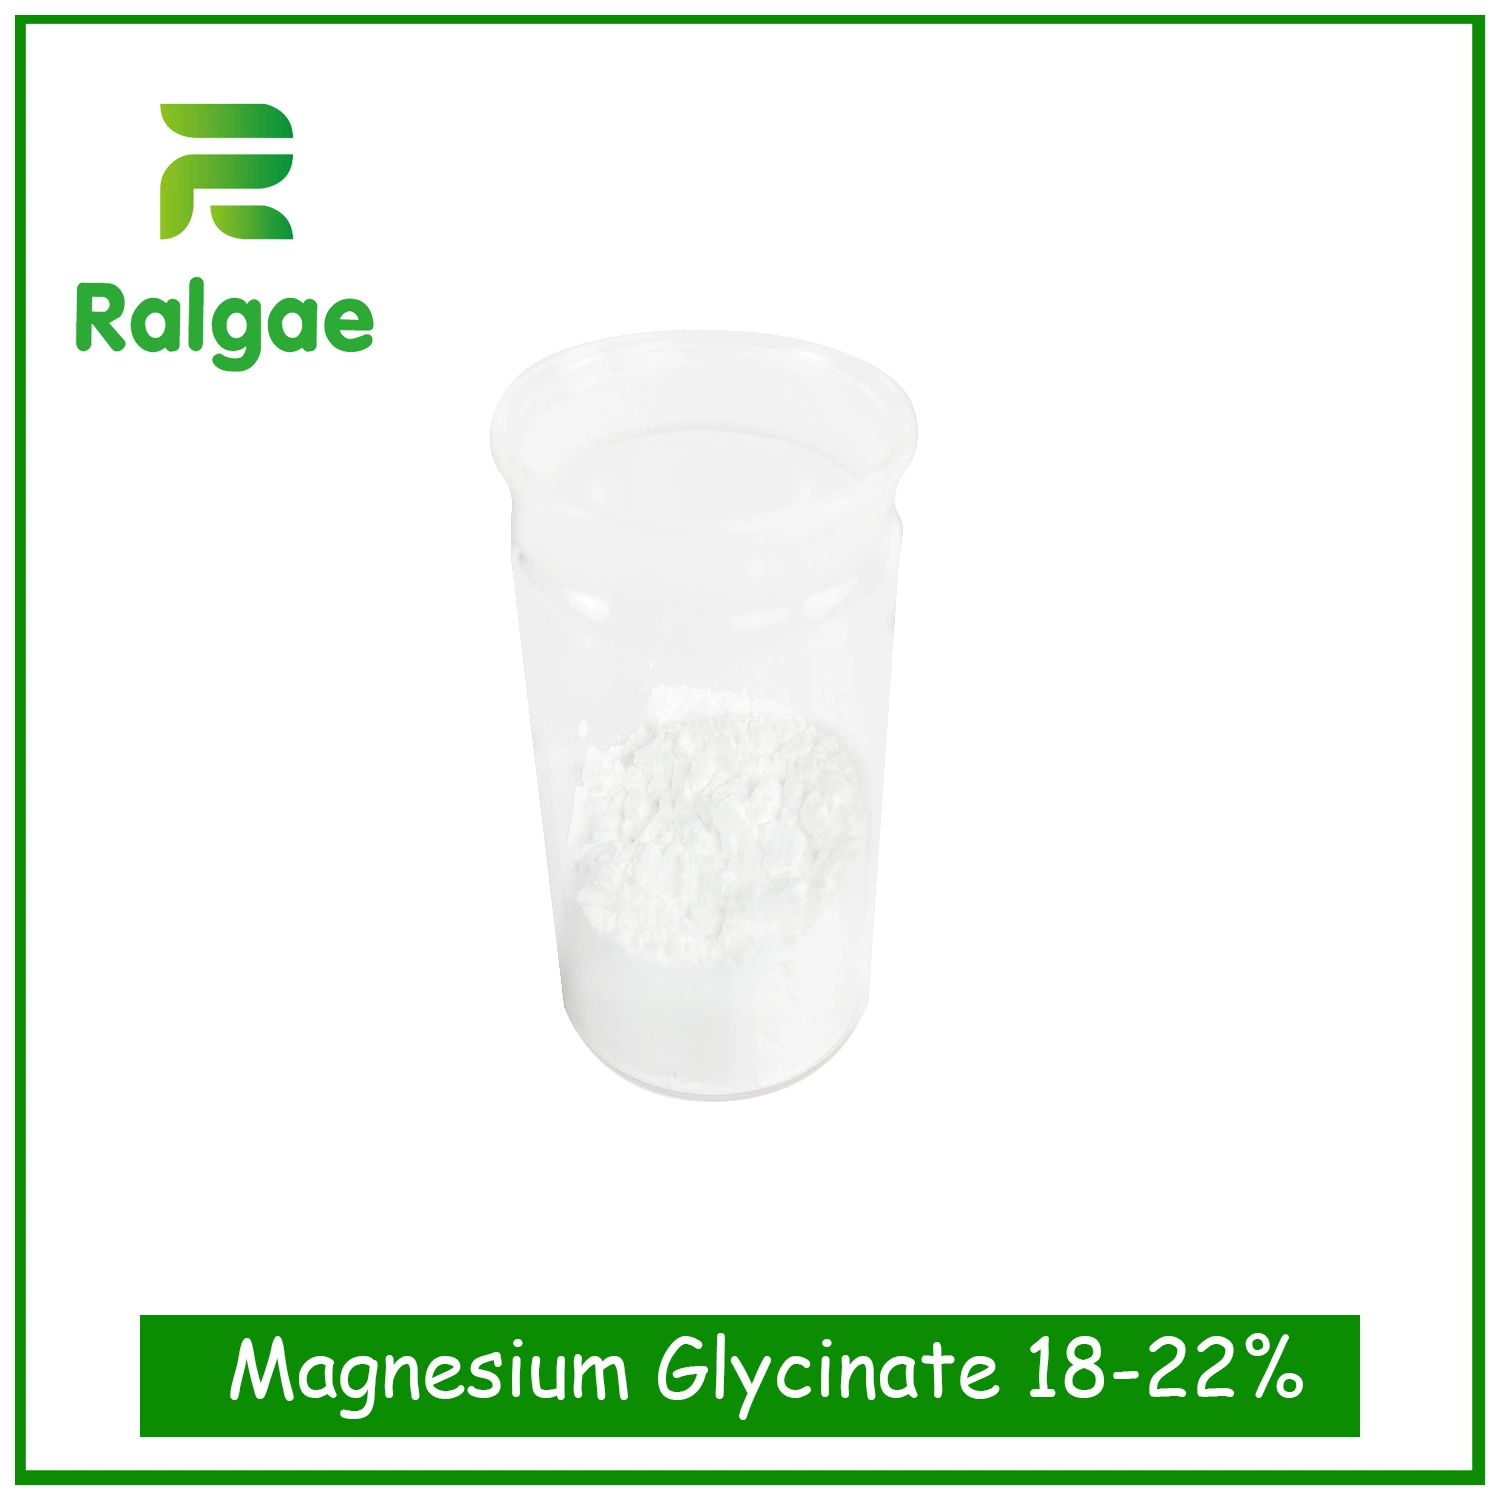 Продукты класса Glycinate из магниевого сплава для здоровья дополняет